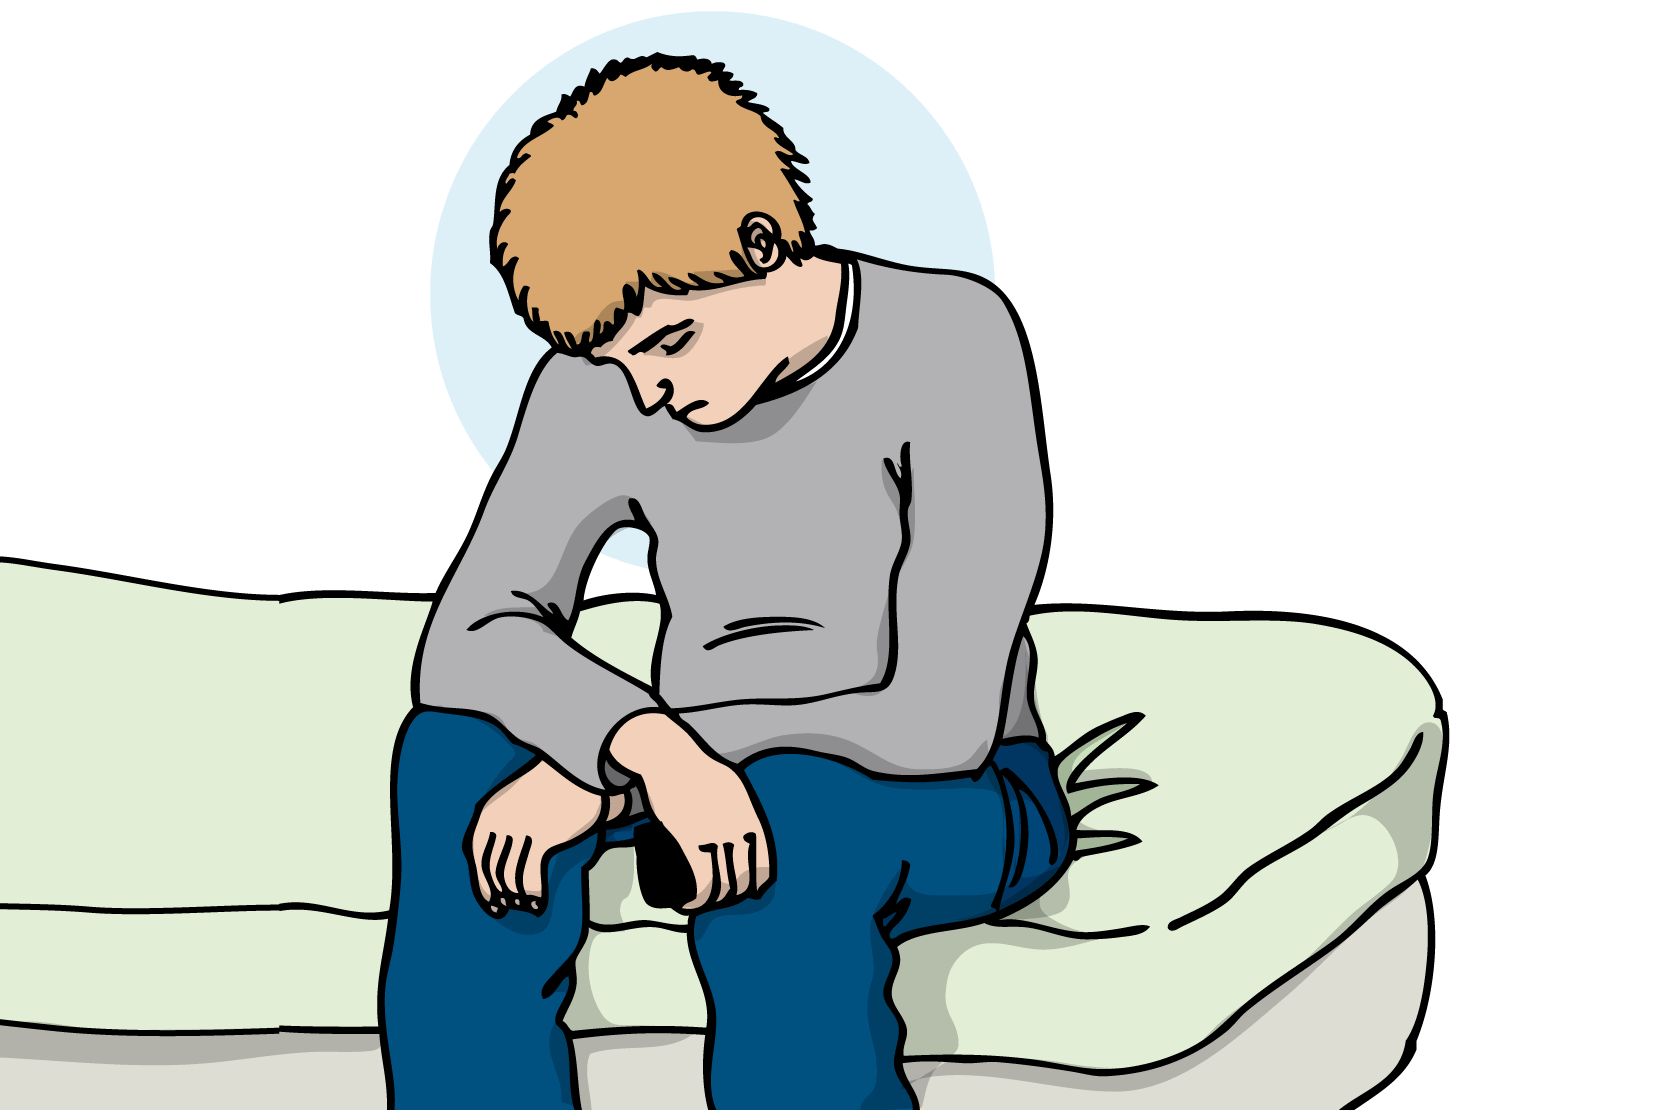 En person som sitter i en säng och ser ledsen ut. Illustration.